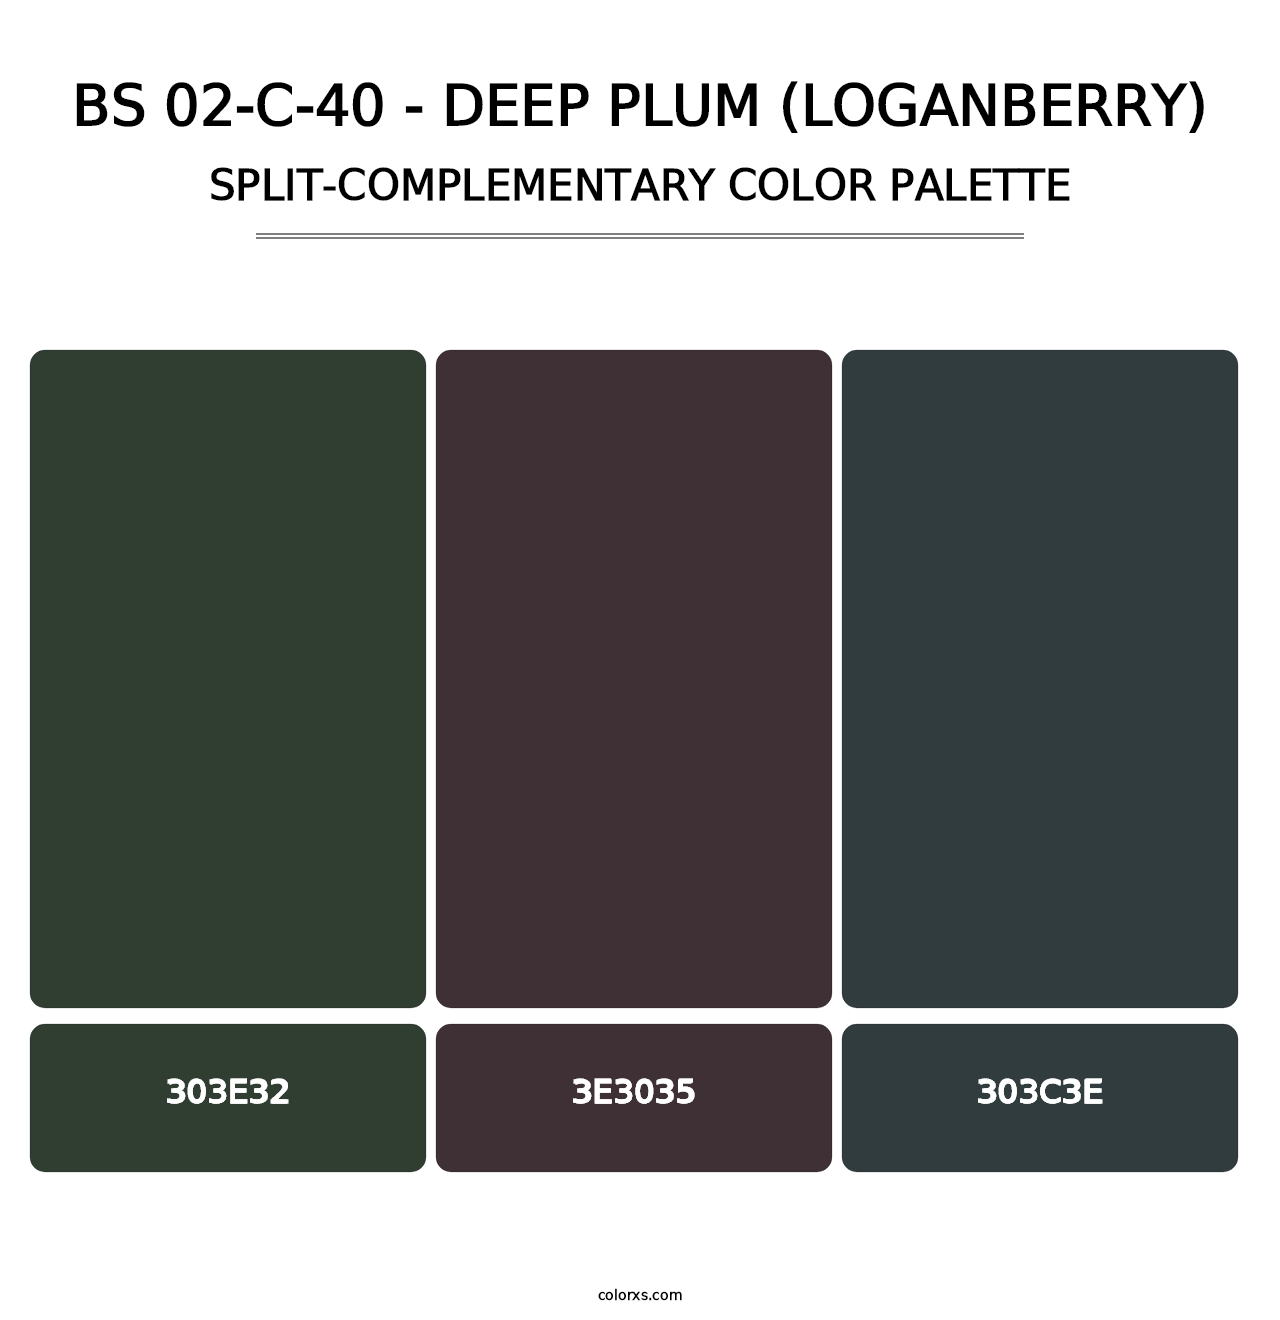 BS 02-C-40 - Deep Plum (Loganberry) - Split-Complementary Color Palette